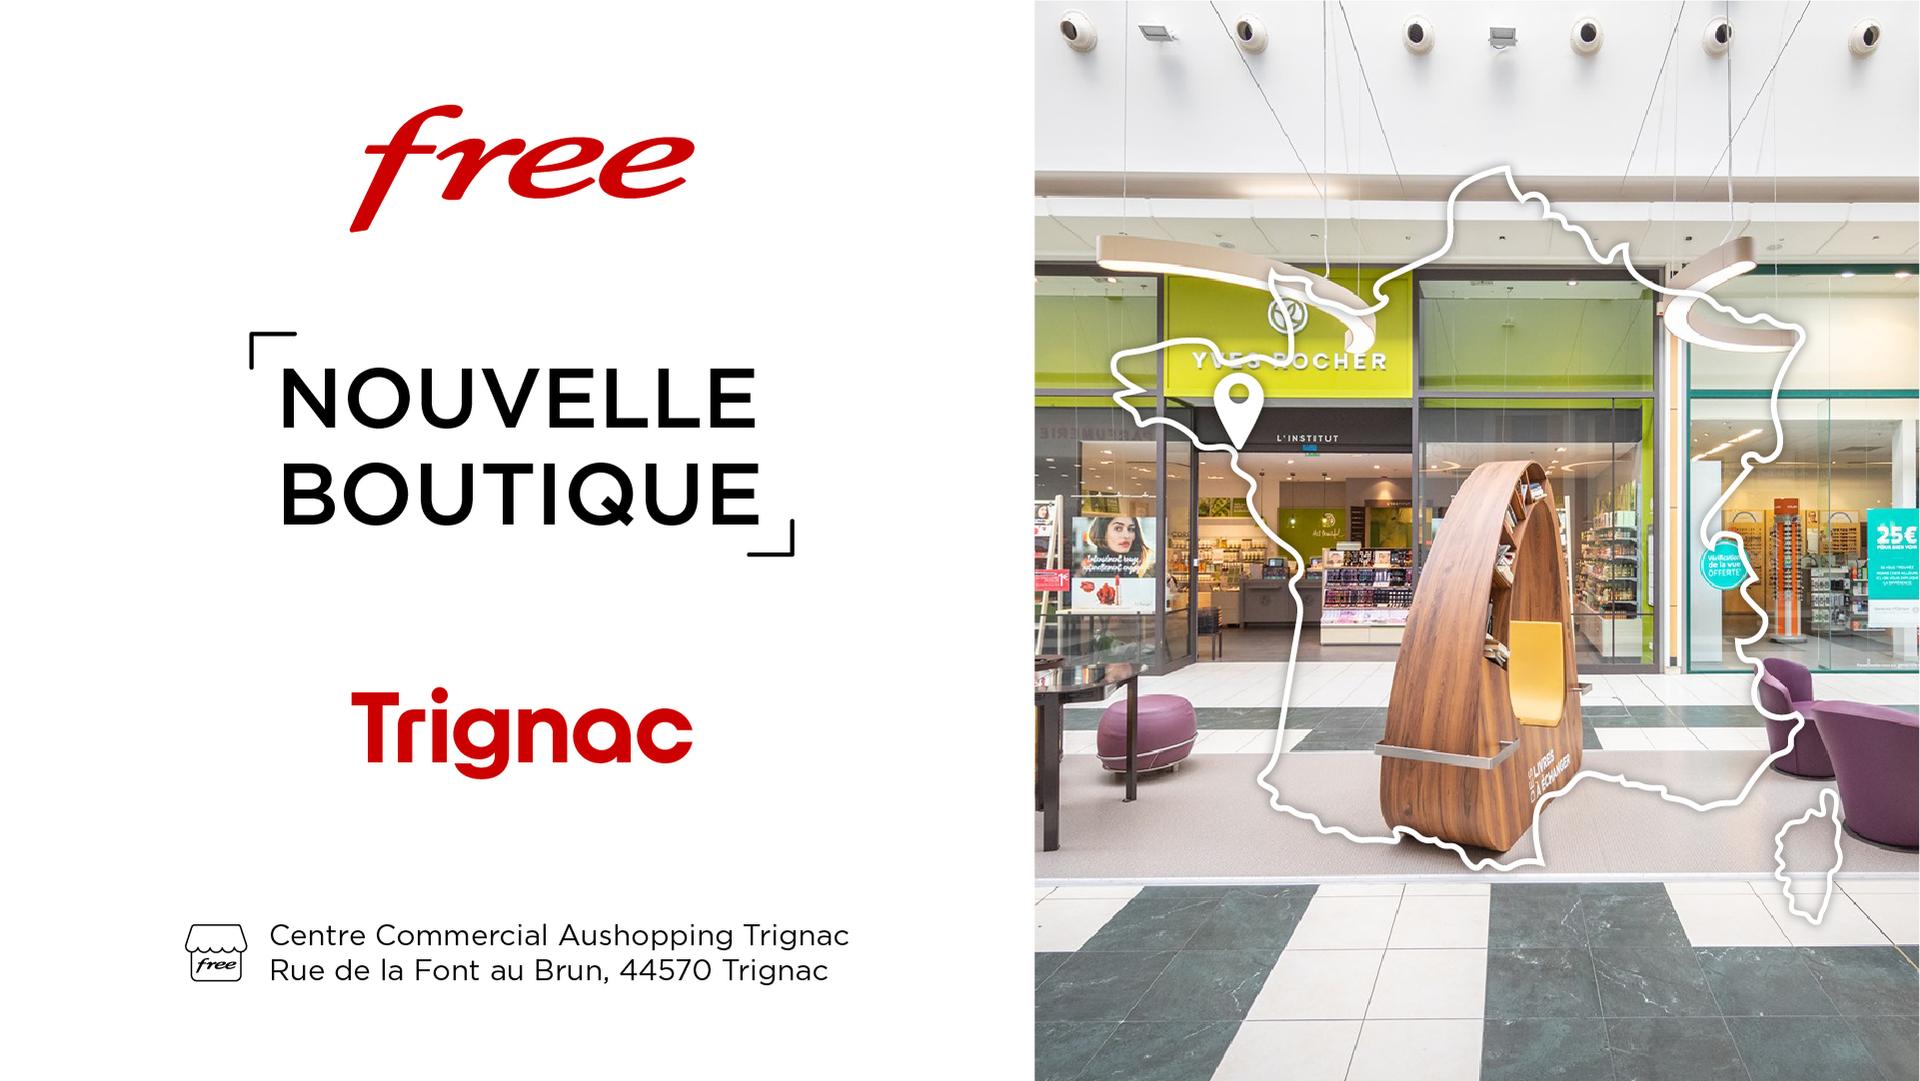 Découvrez la nouvelle boutique Free de Trignac